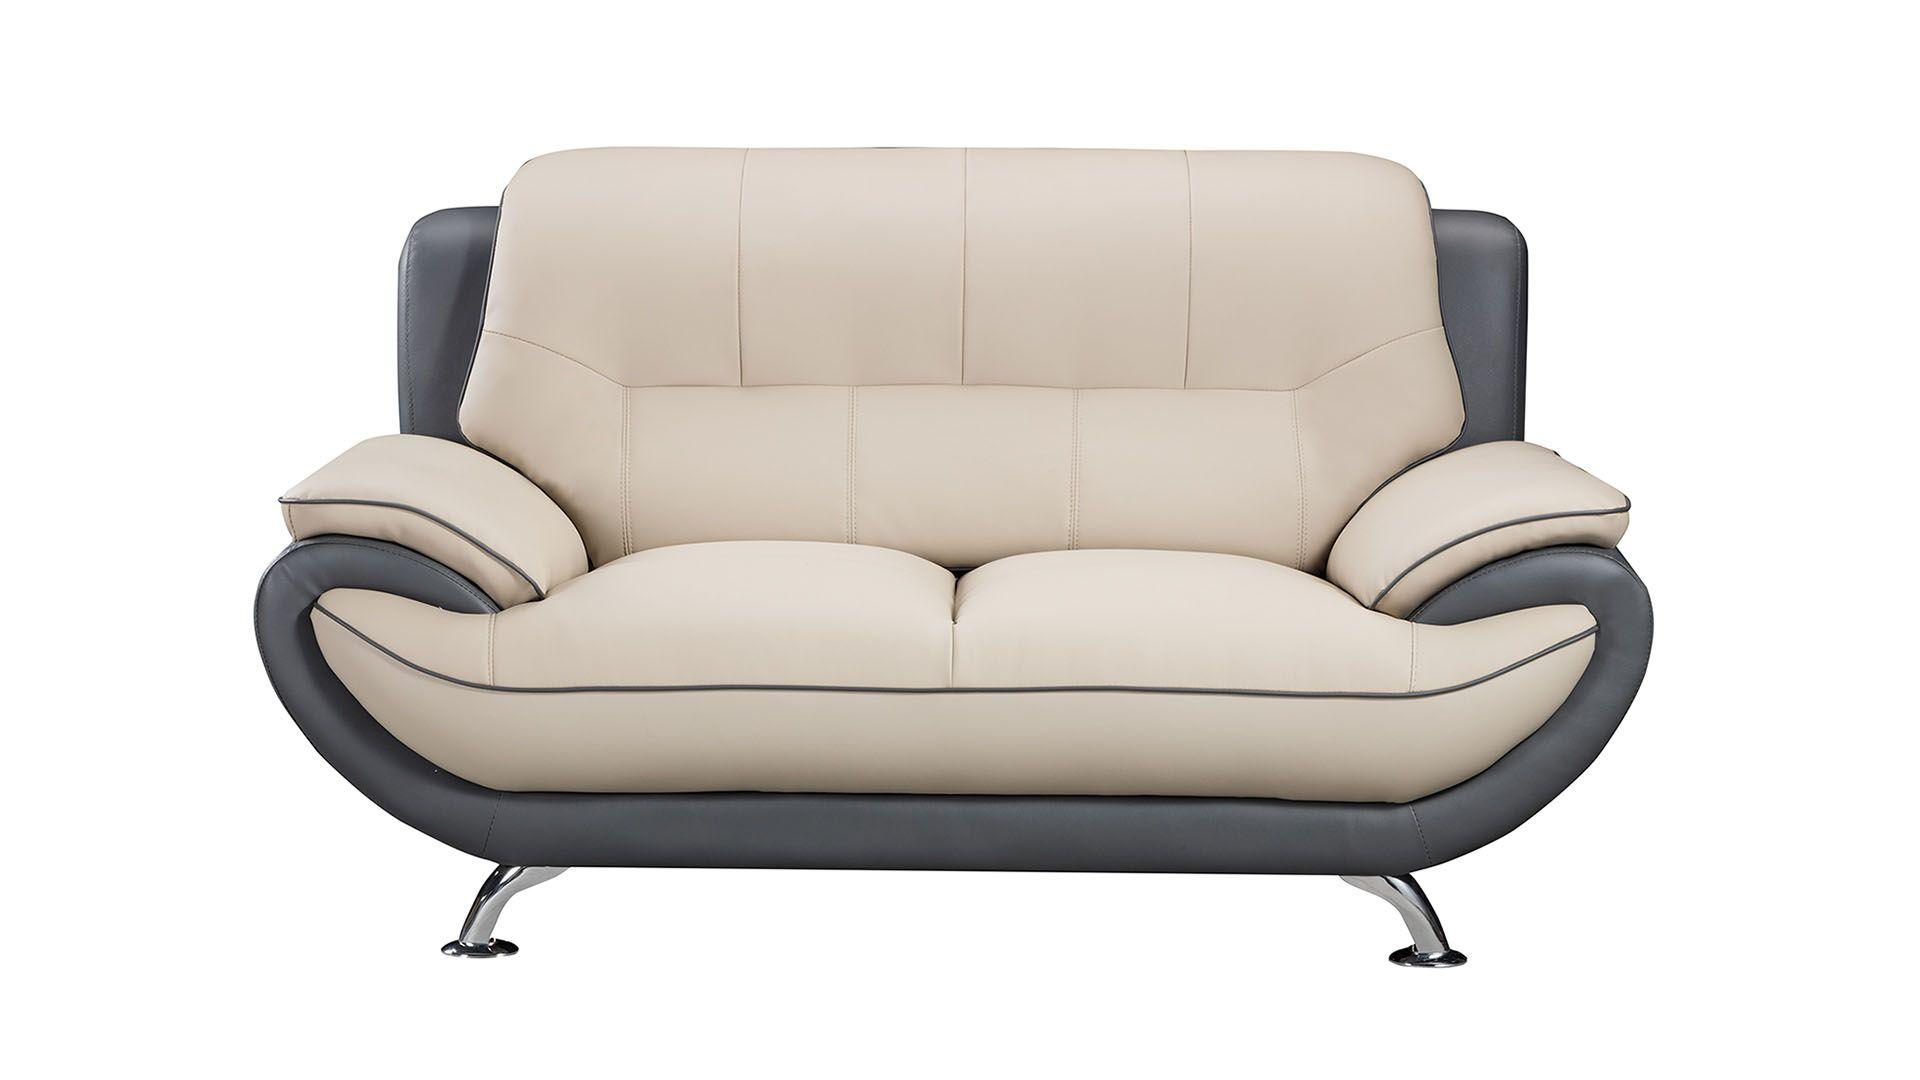 

    
American Eagle Furniture AE208-LG.DG-2PC Sofa Set Light Gray/Gray AE208-LG.DG-2PC
